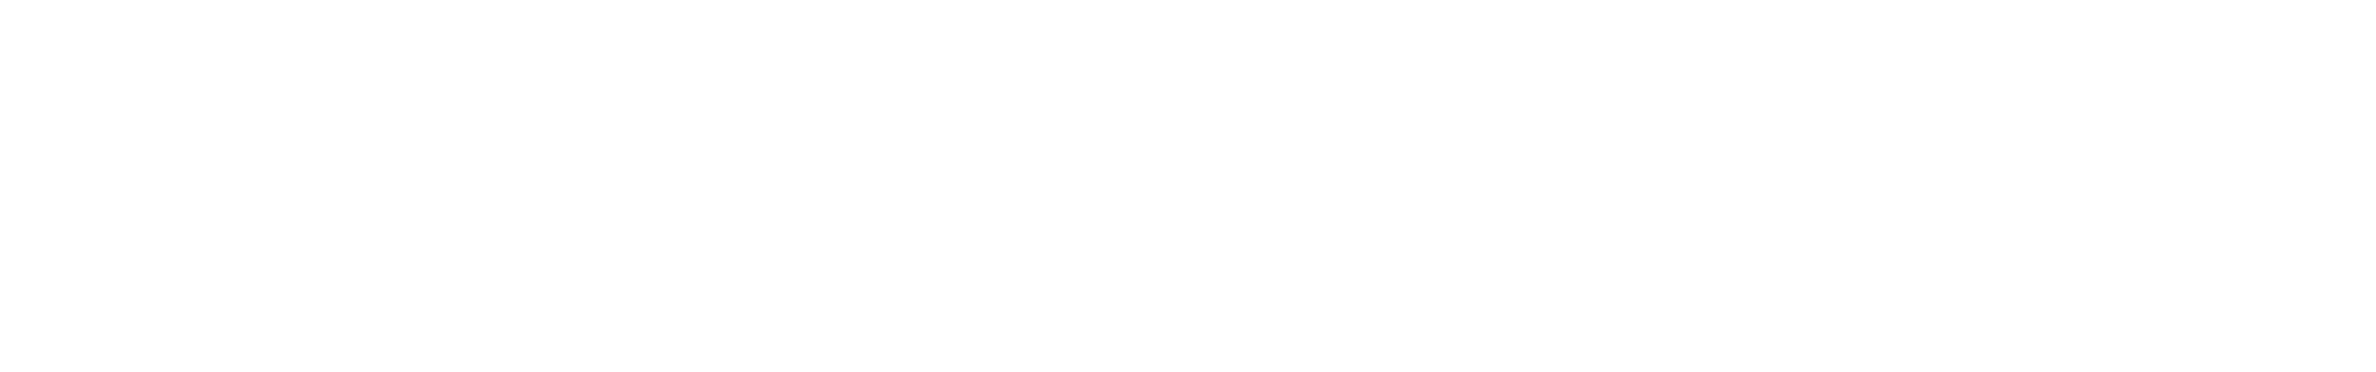 Delhi Public School Dehradun Logo